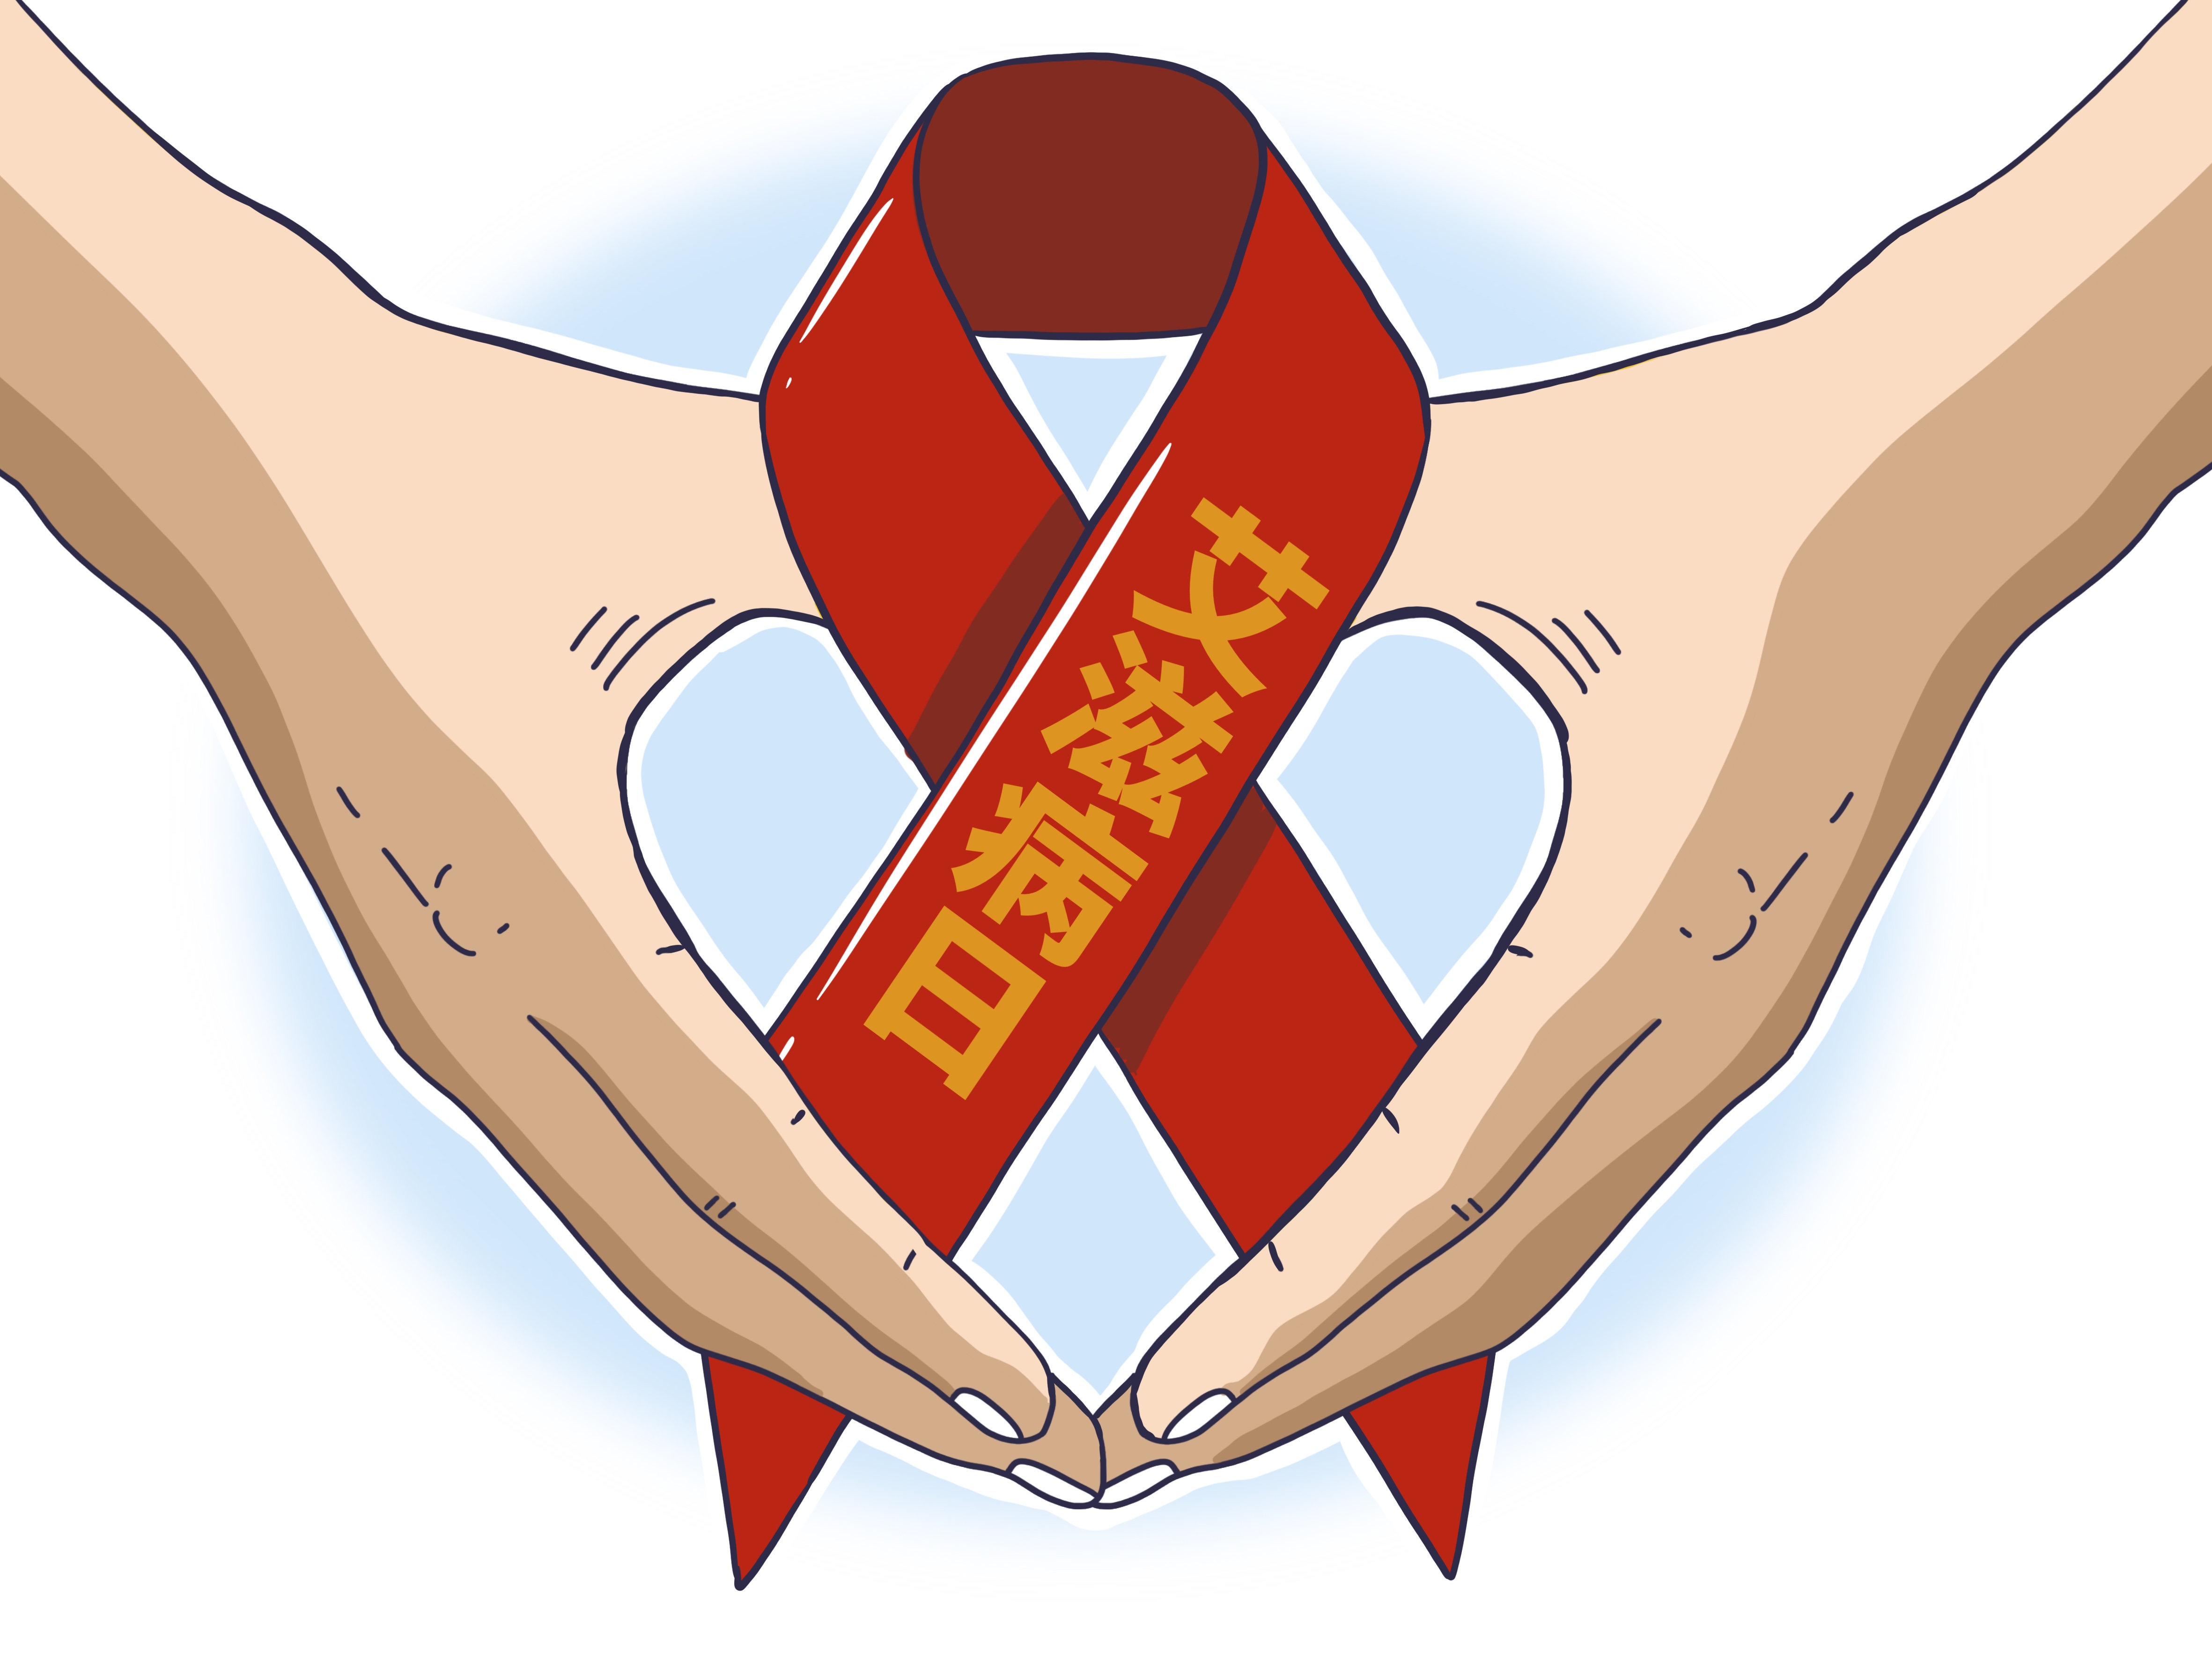 预防艾滋病插画图片